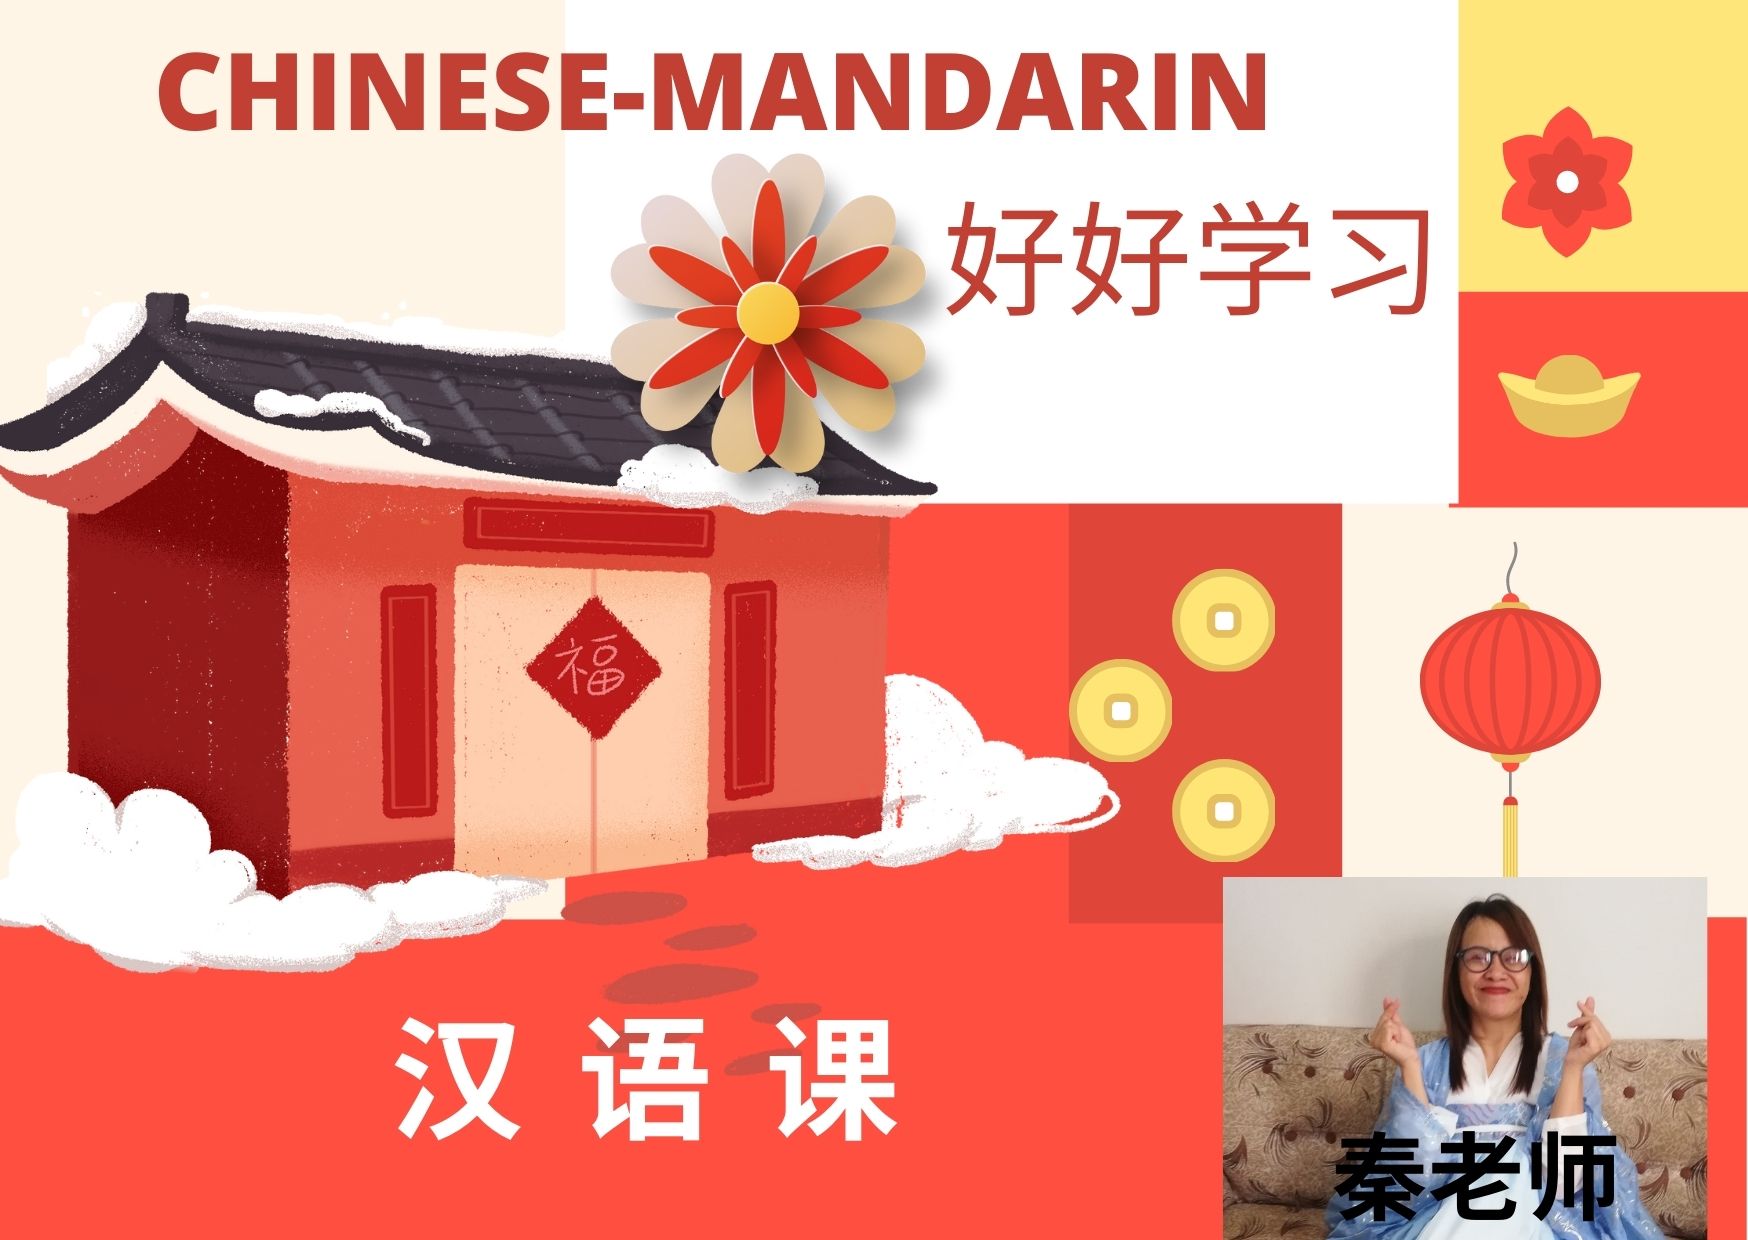 Chinese-Mandarin